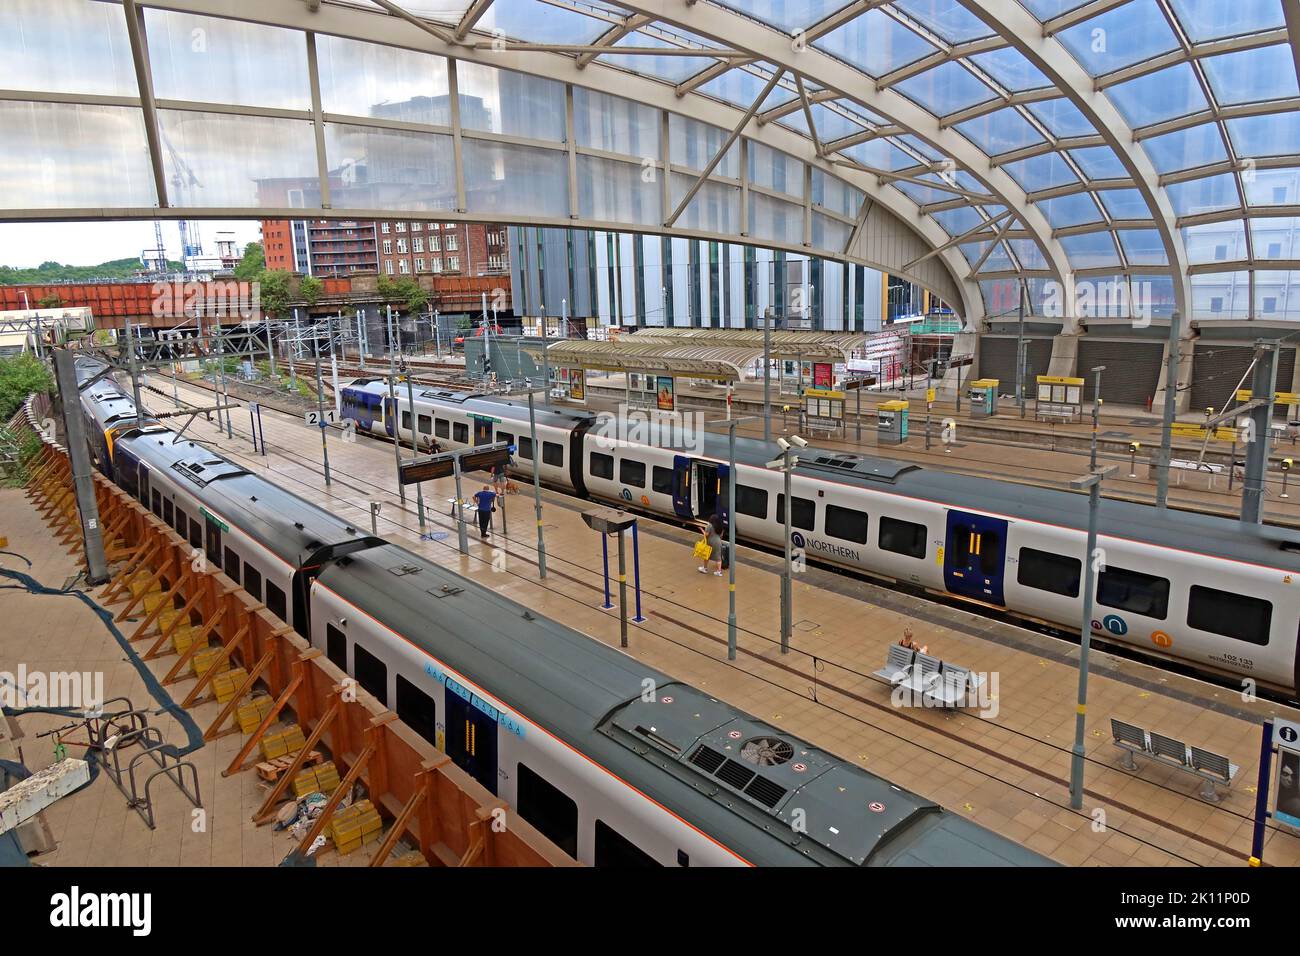 Bahnhöfe 1 und 2, am Bahnhof Manchester Victoria, NorthernRailway, Metrolink-Bahnhöfe rechts Stockfoto